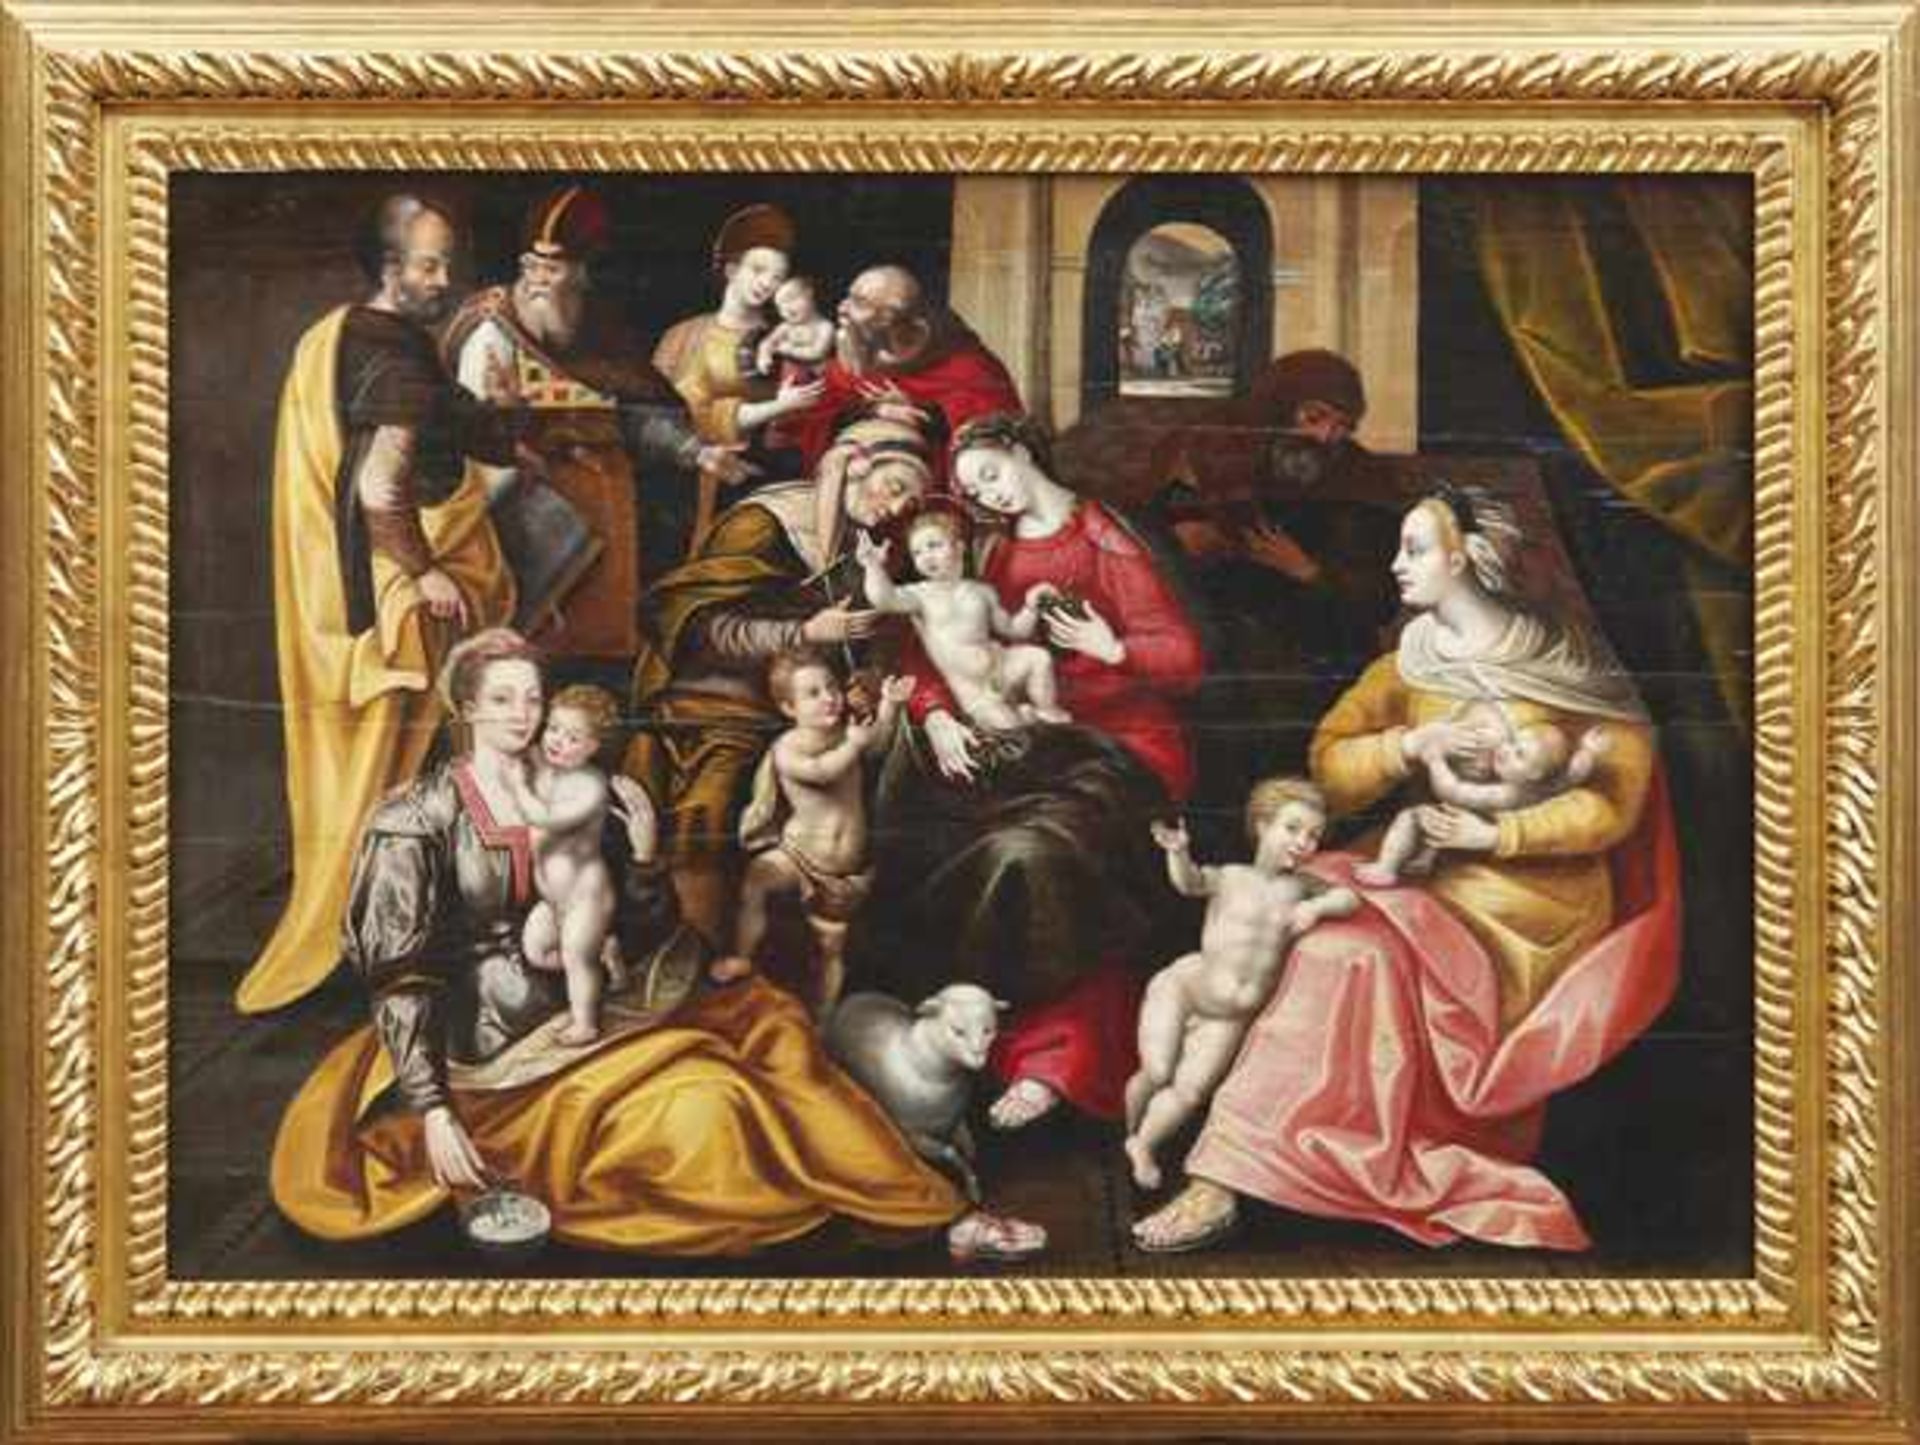 Vos, Marten de - NachfolgerDie Heilige Sippe(Antwerpen 1532-1603 ebd.) Dargestellt ist die Familie